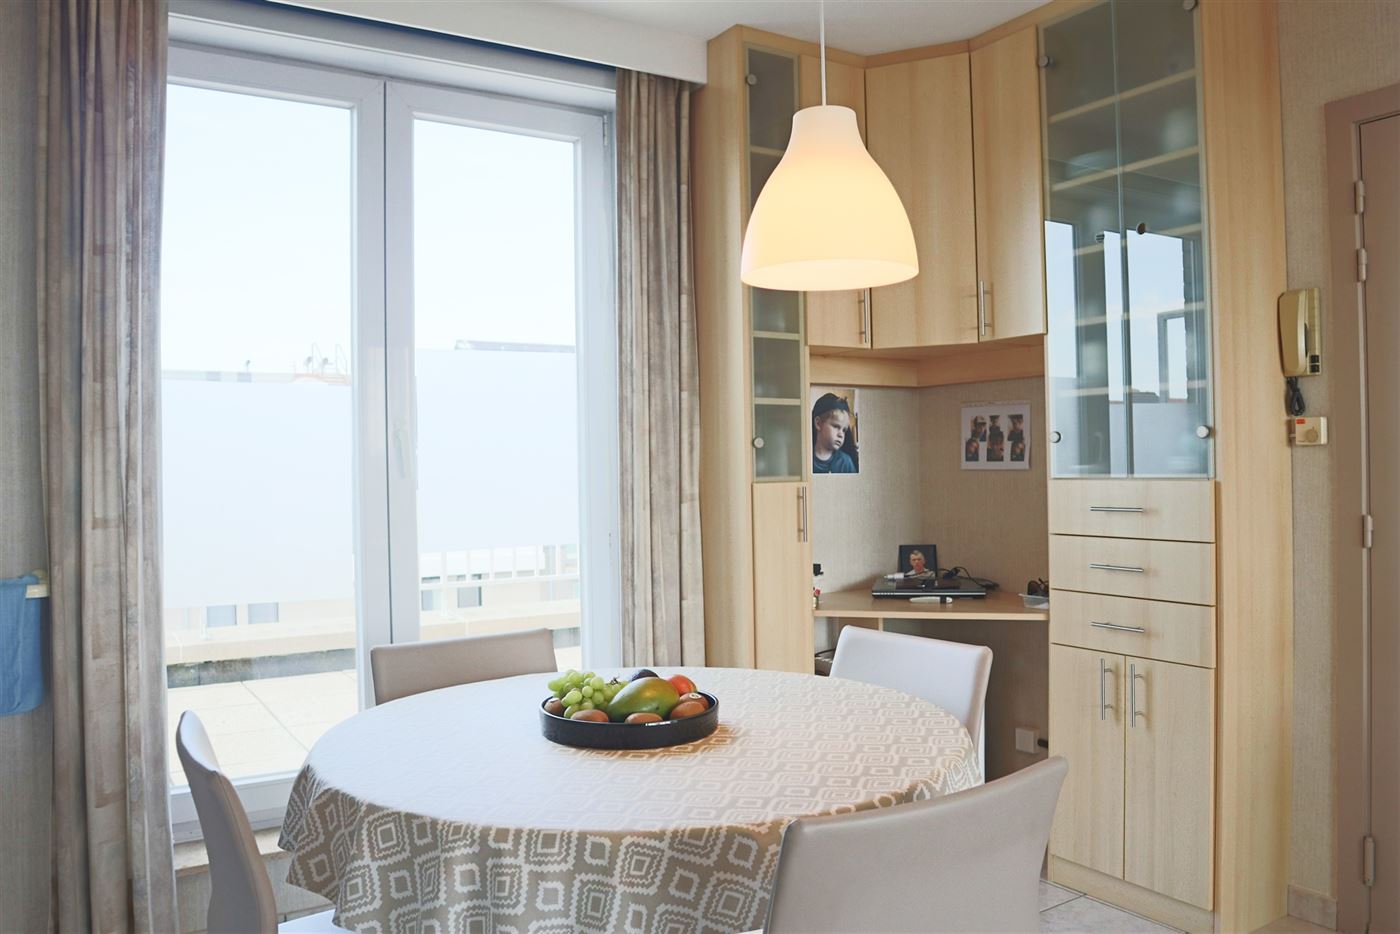 Res. Panorama C1 C601 - Zonnig dakappartement met fantastisch open zicht op de Simli - Gelegen op de zesde verdieping - Leefruimte met open keuken - D...